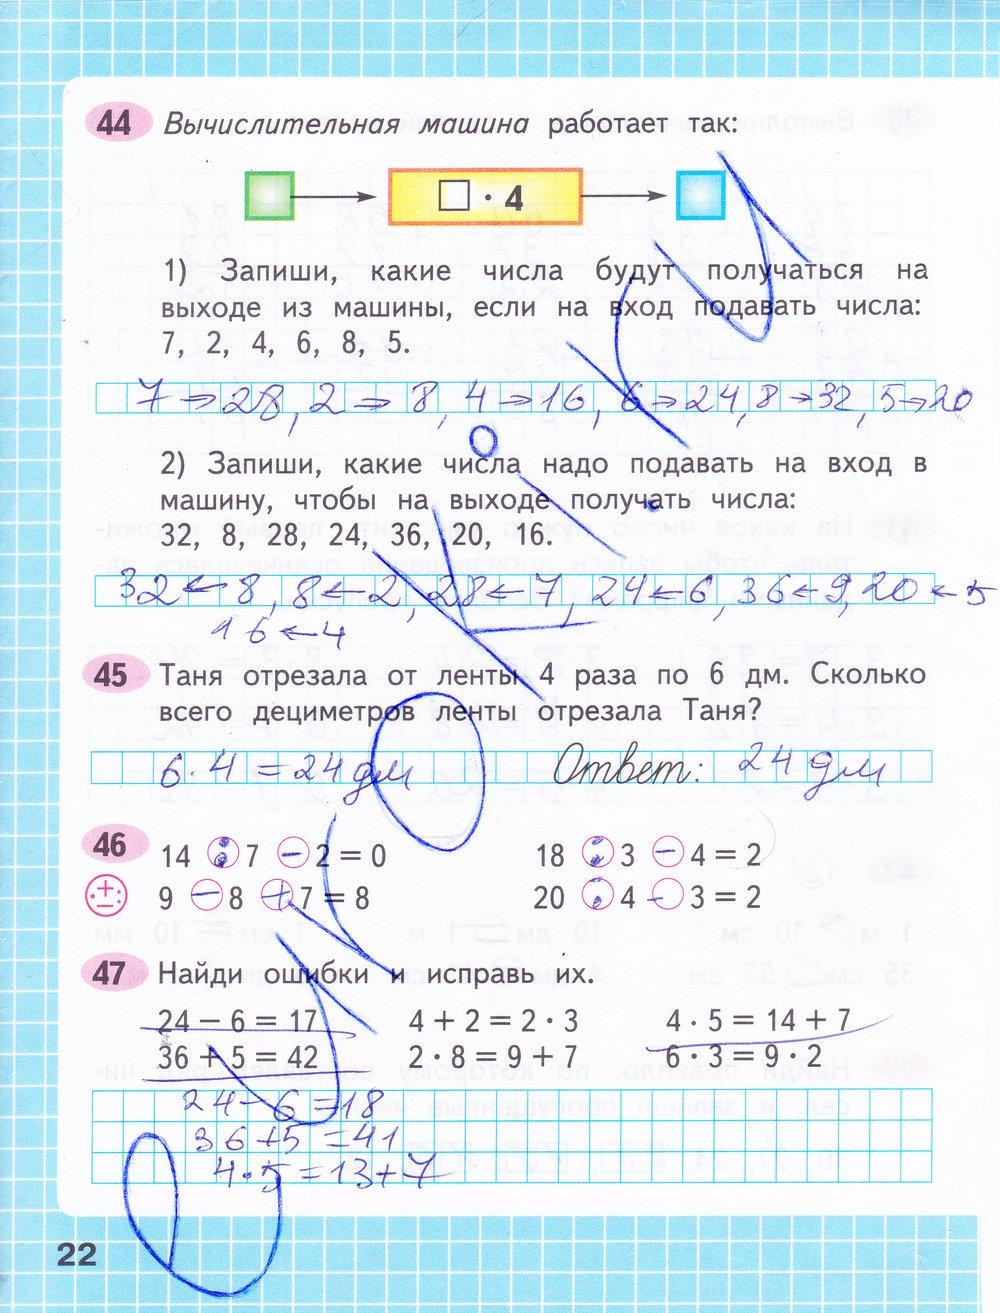 Математика рабочая тетрадь страница 32 ответы. Математика 3 класс 1 часть рабочая тетрадь стр 22-23.